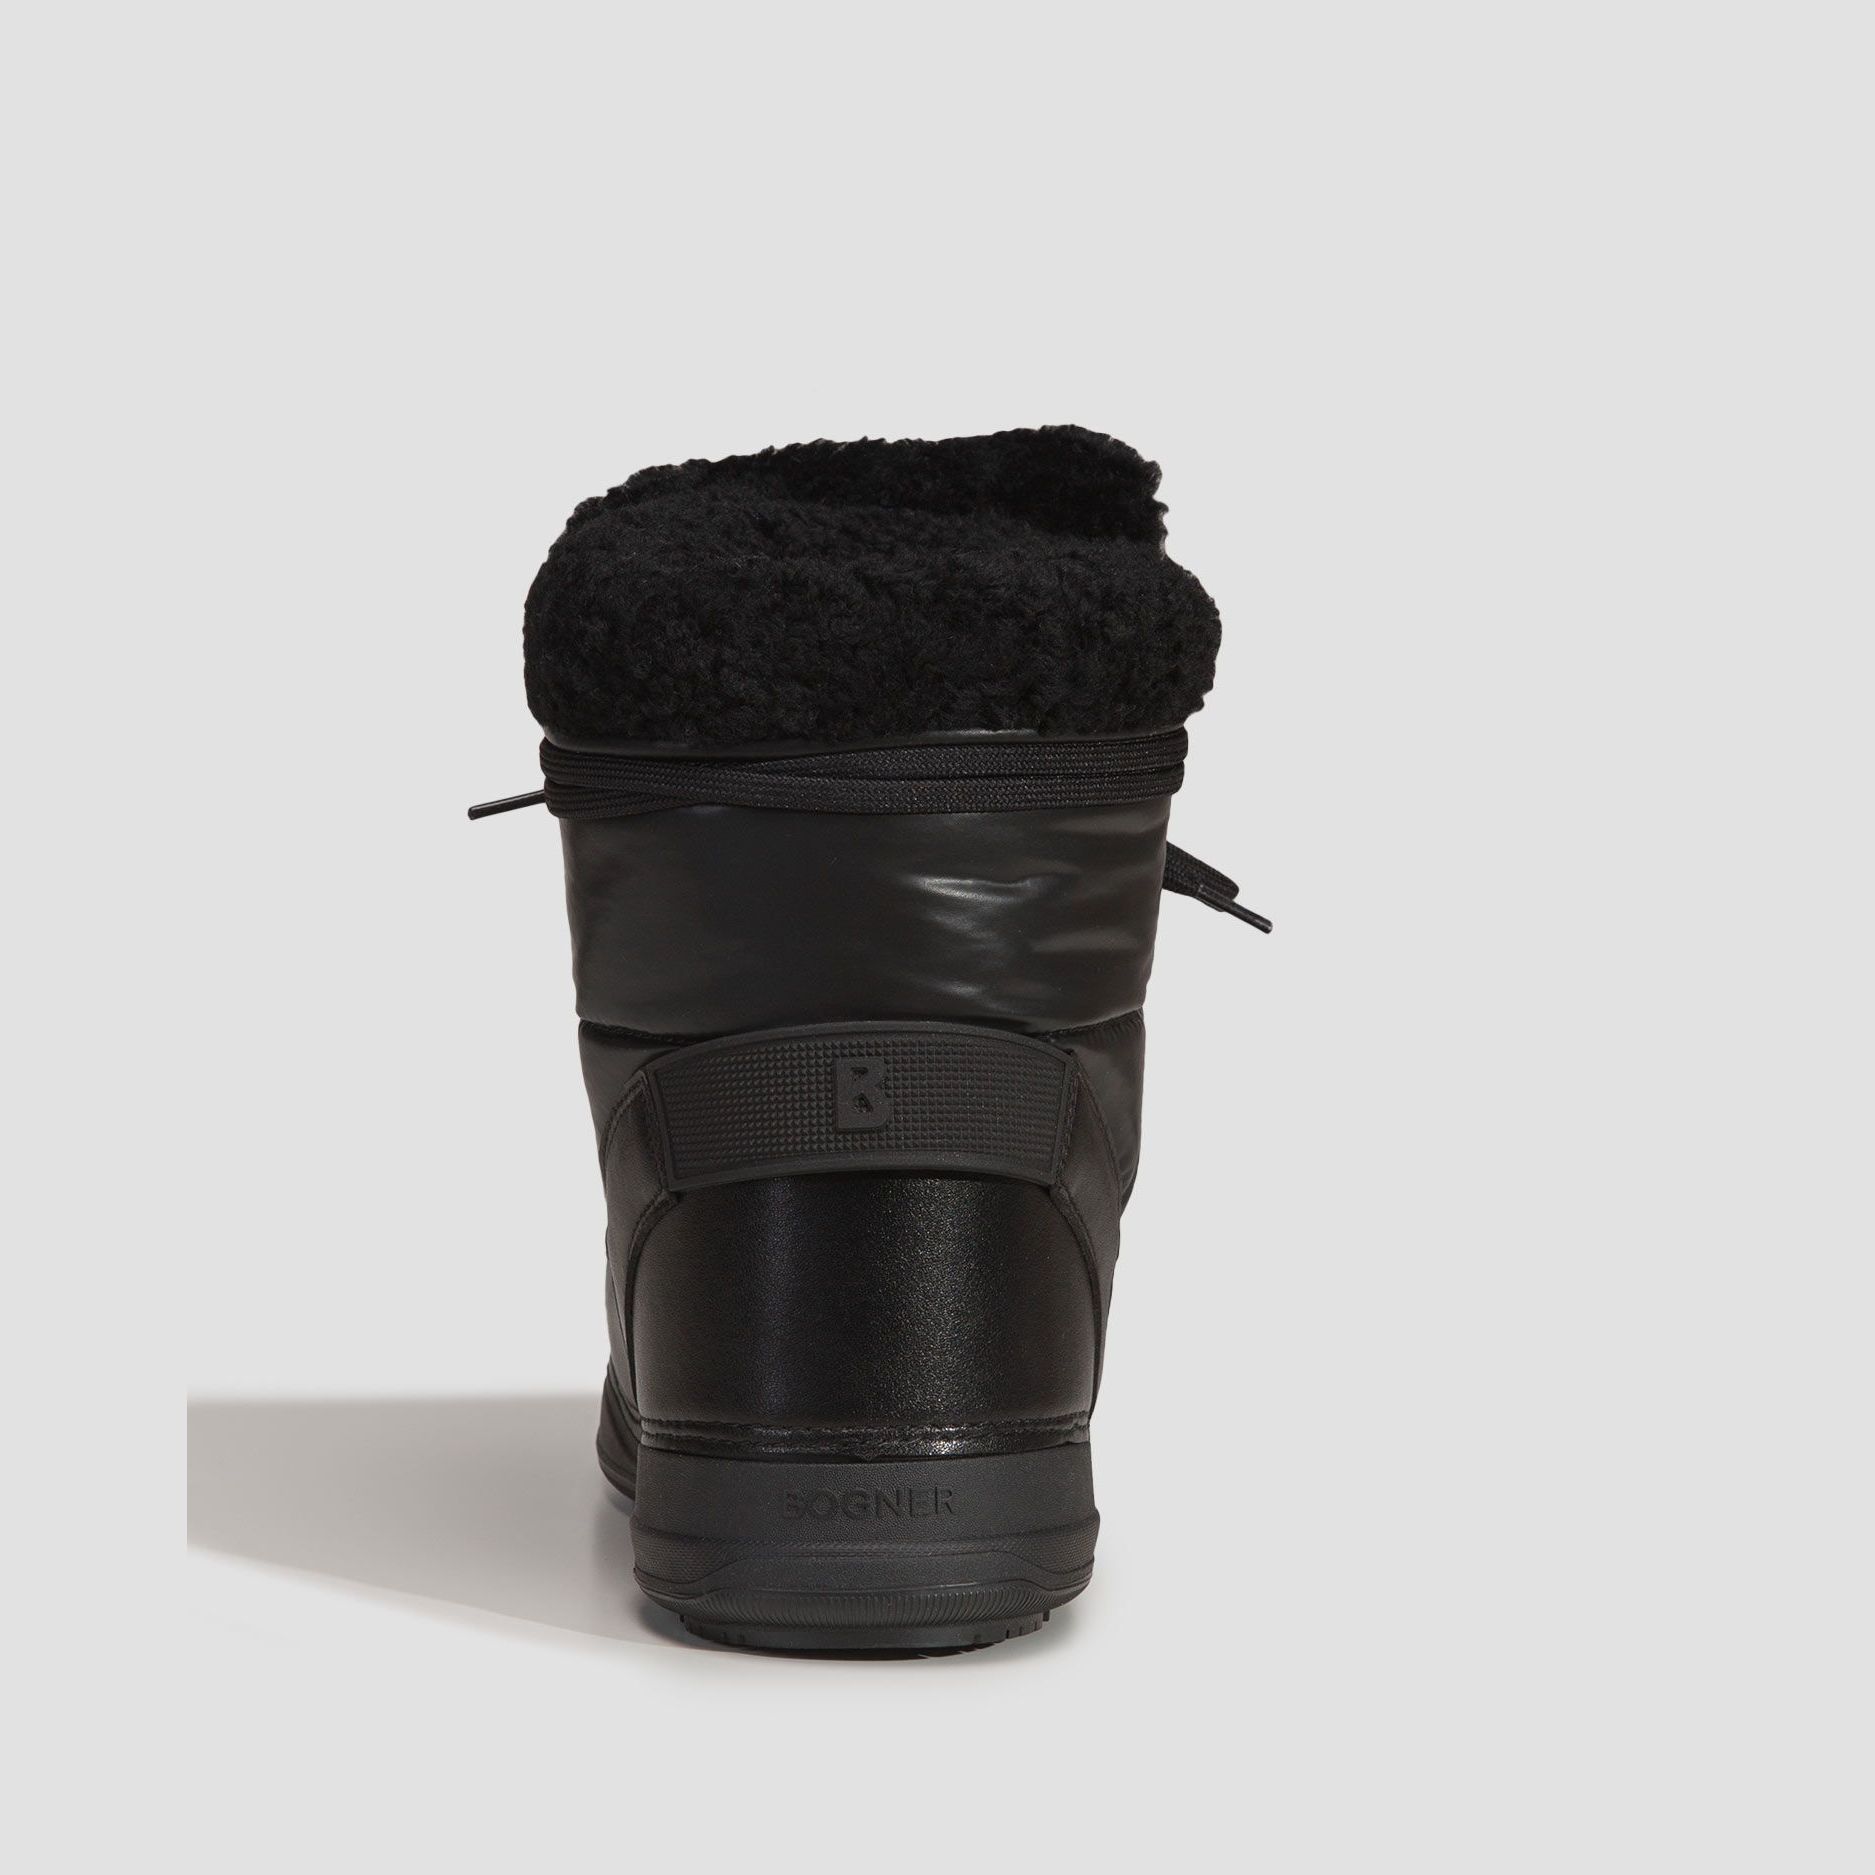 Incaltaminte De Iarna -  bogner La Plagne 2B Snow boots